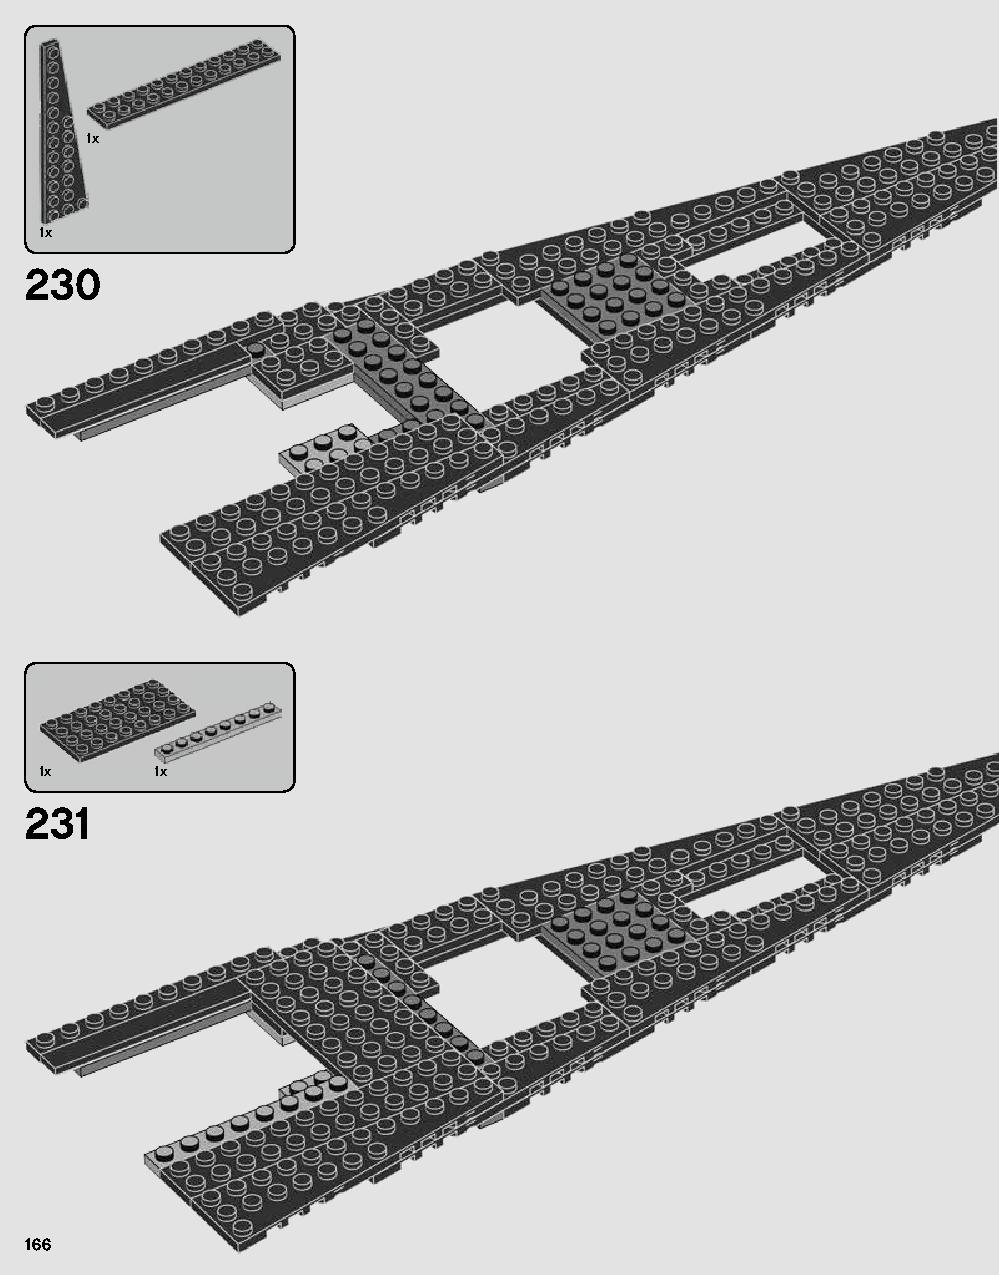 ダース・ベイダーの城 75251 レゴの商品情報 レゴの説明書・組立方法 166 page